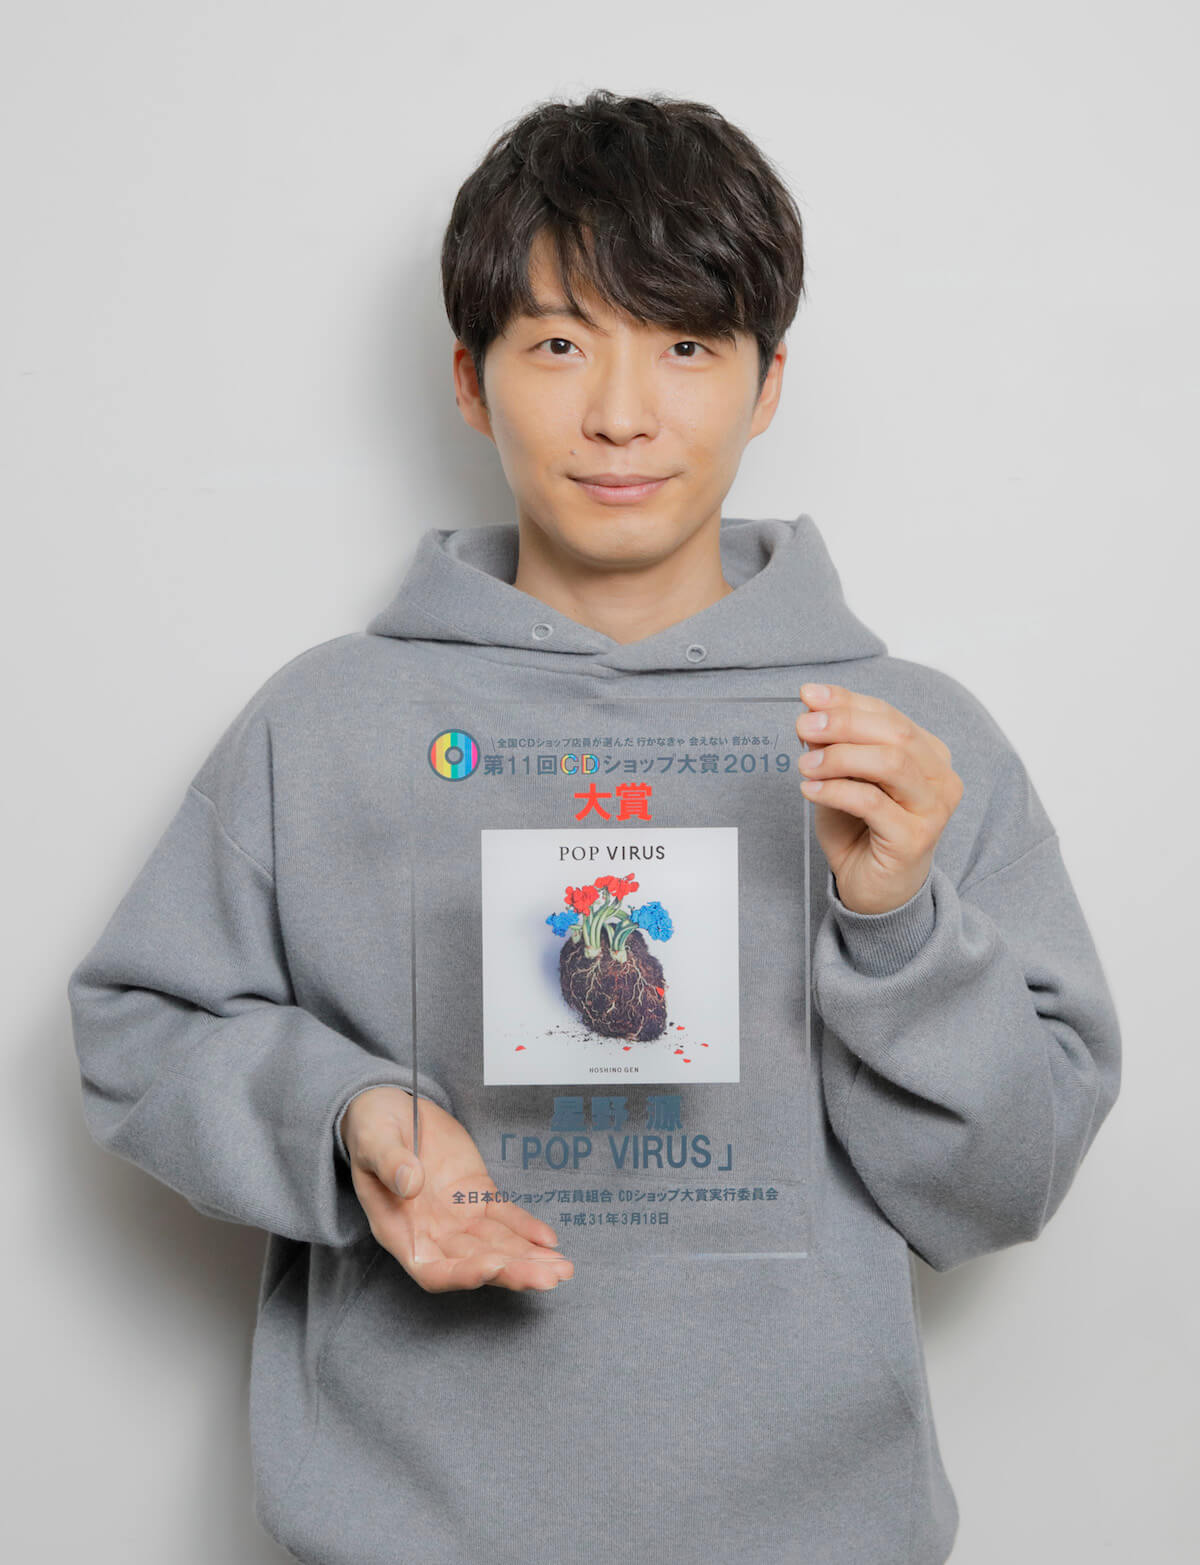 星野源、アルバム『POP VIRUS』で史上初の「CDショップ大賞」大賞2度目の受賞！ | Qetic